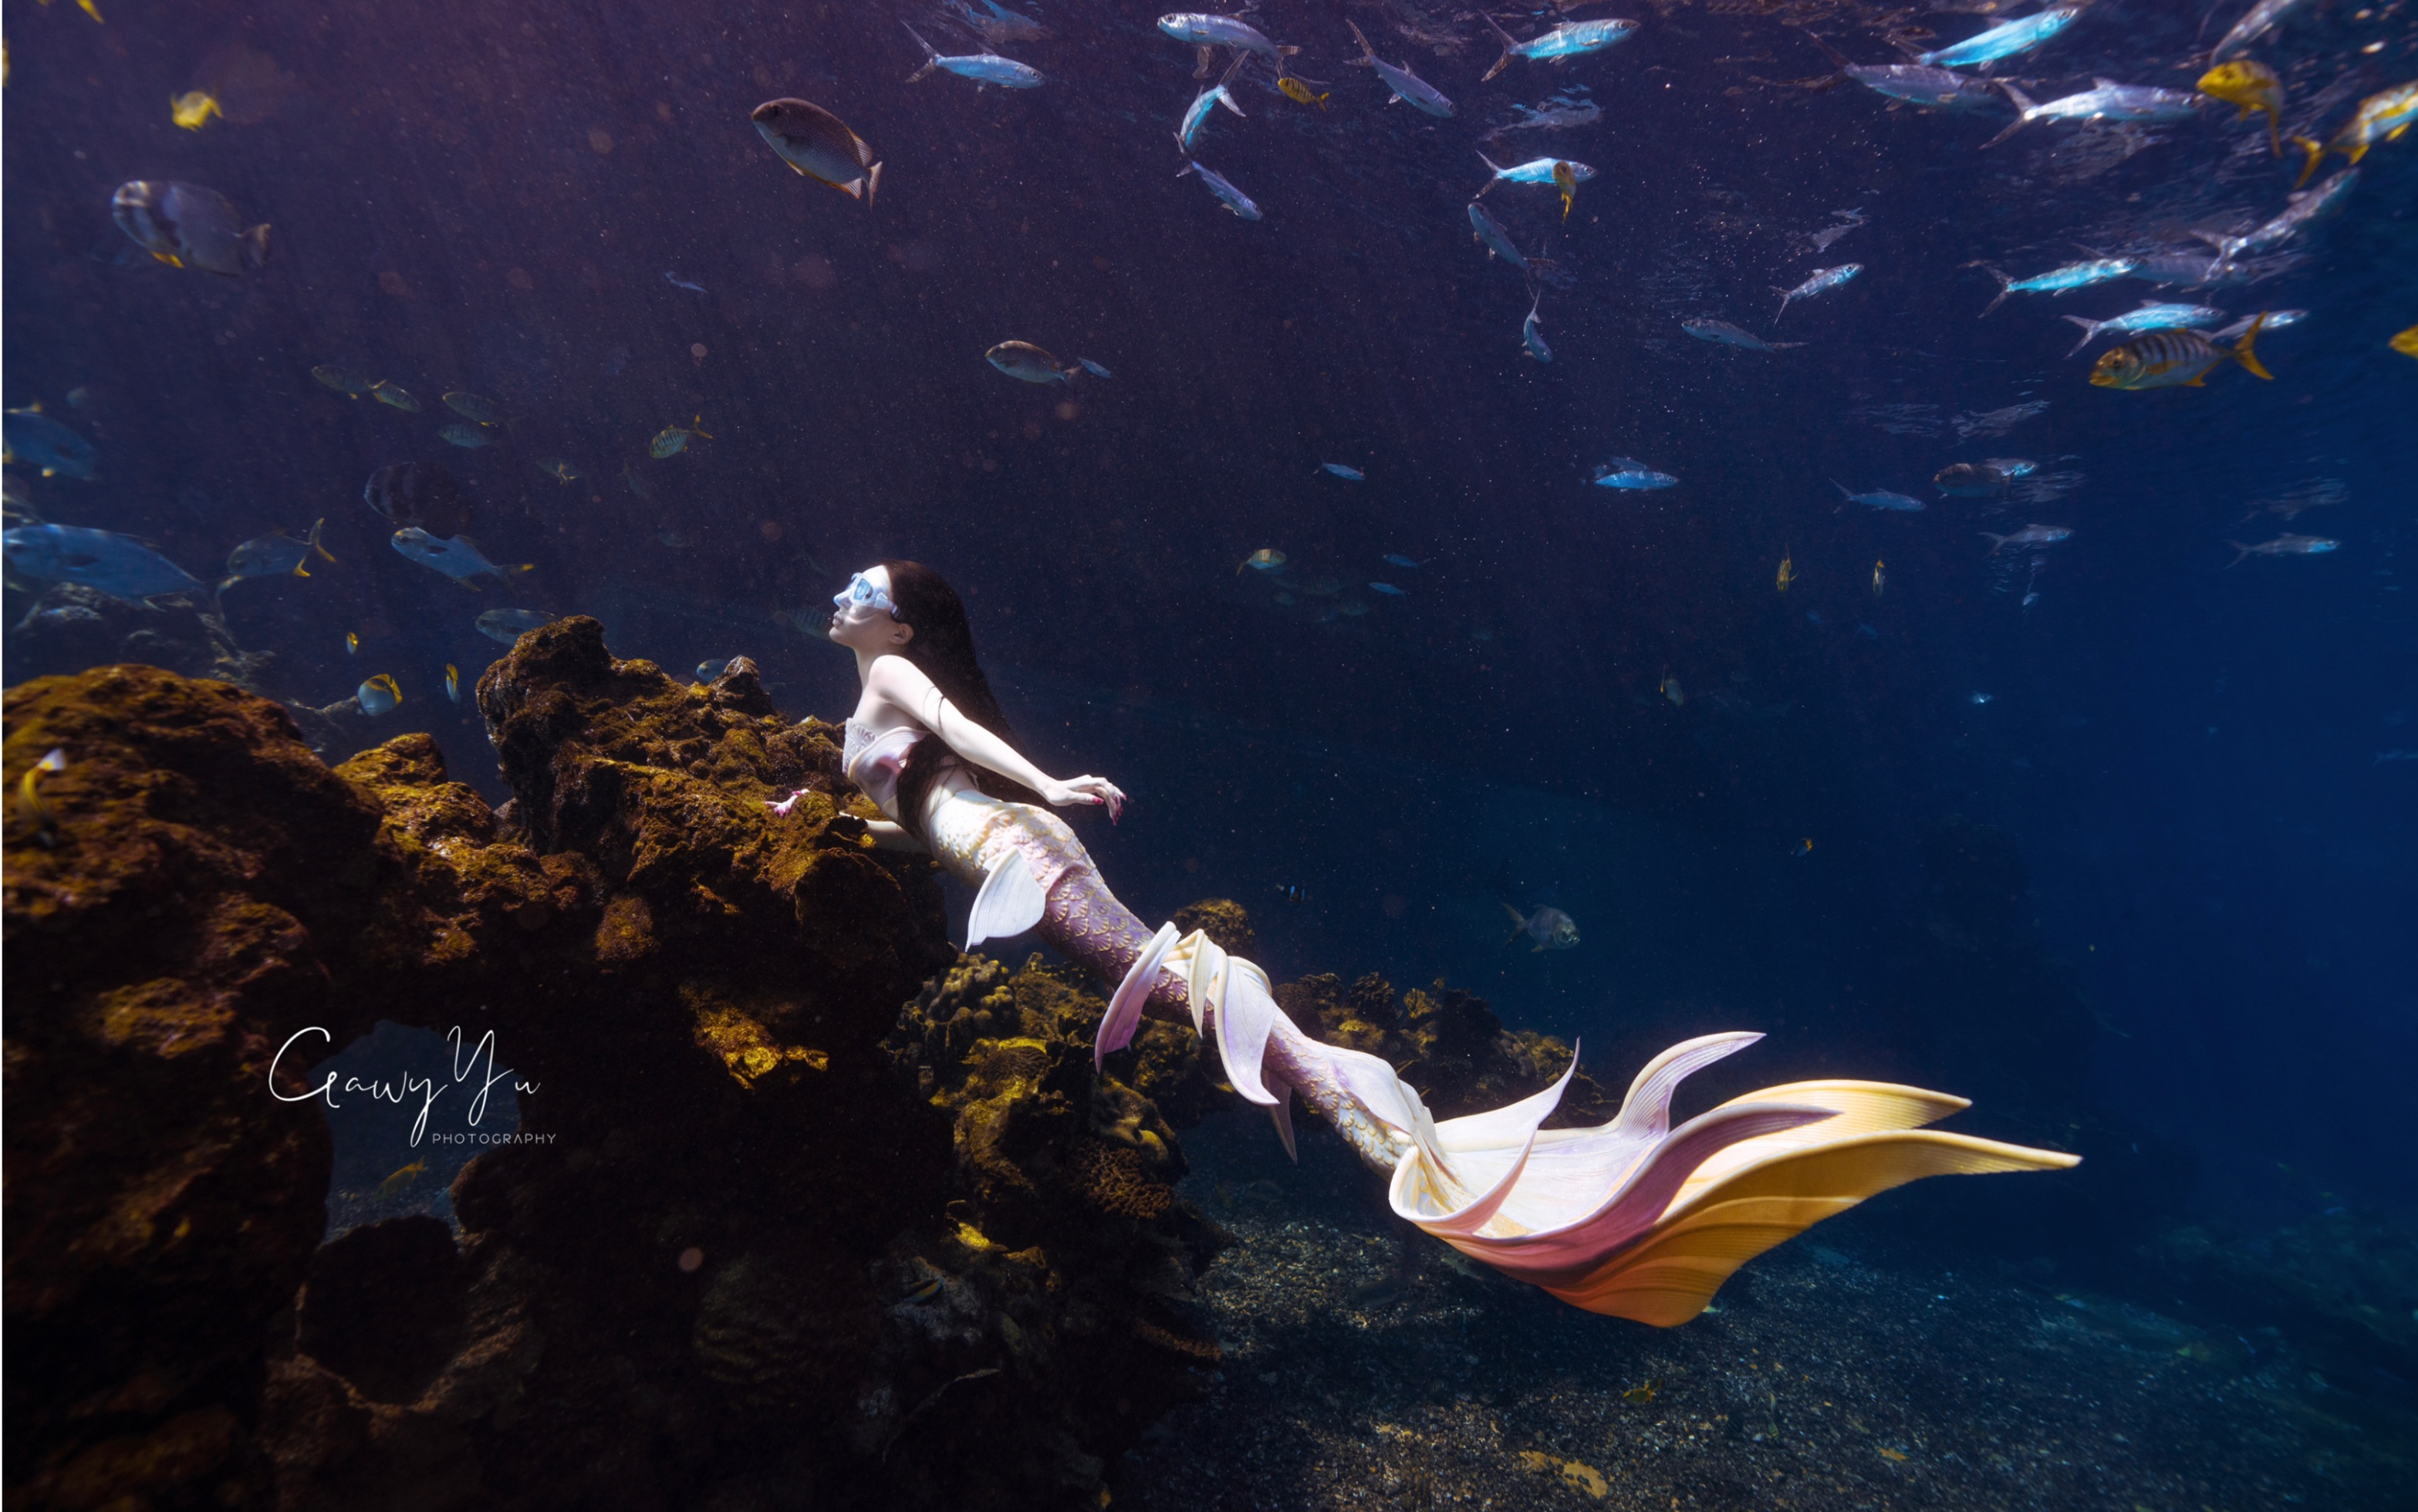 南京海底世界美人鱼图片